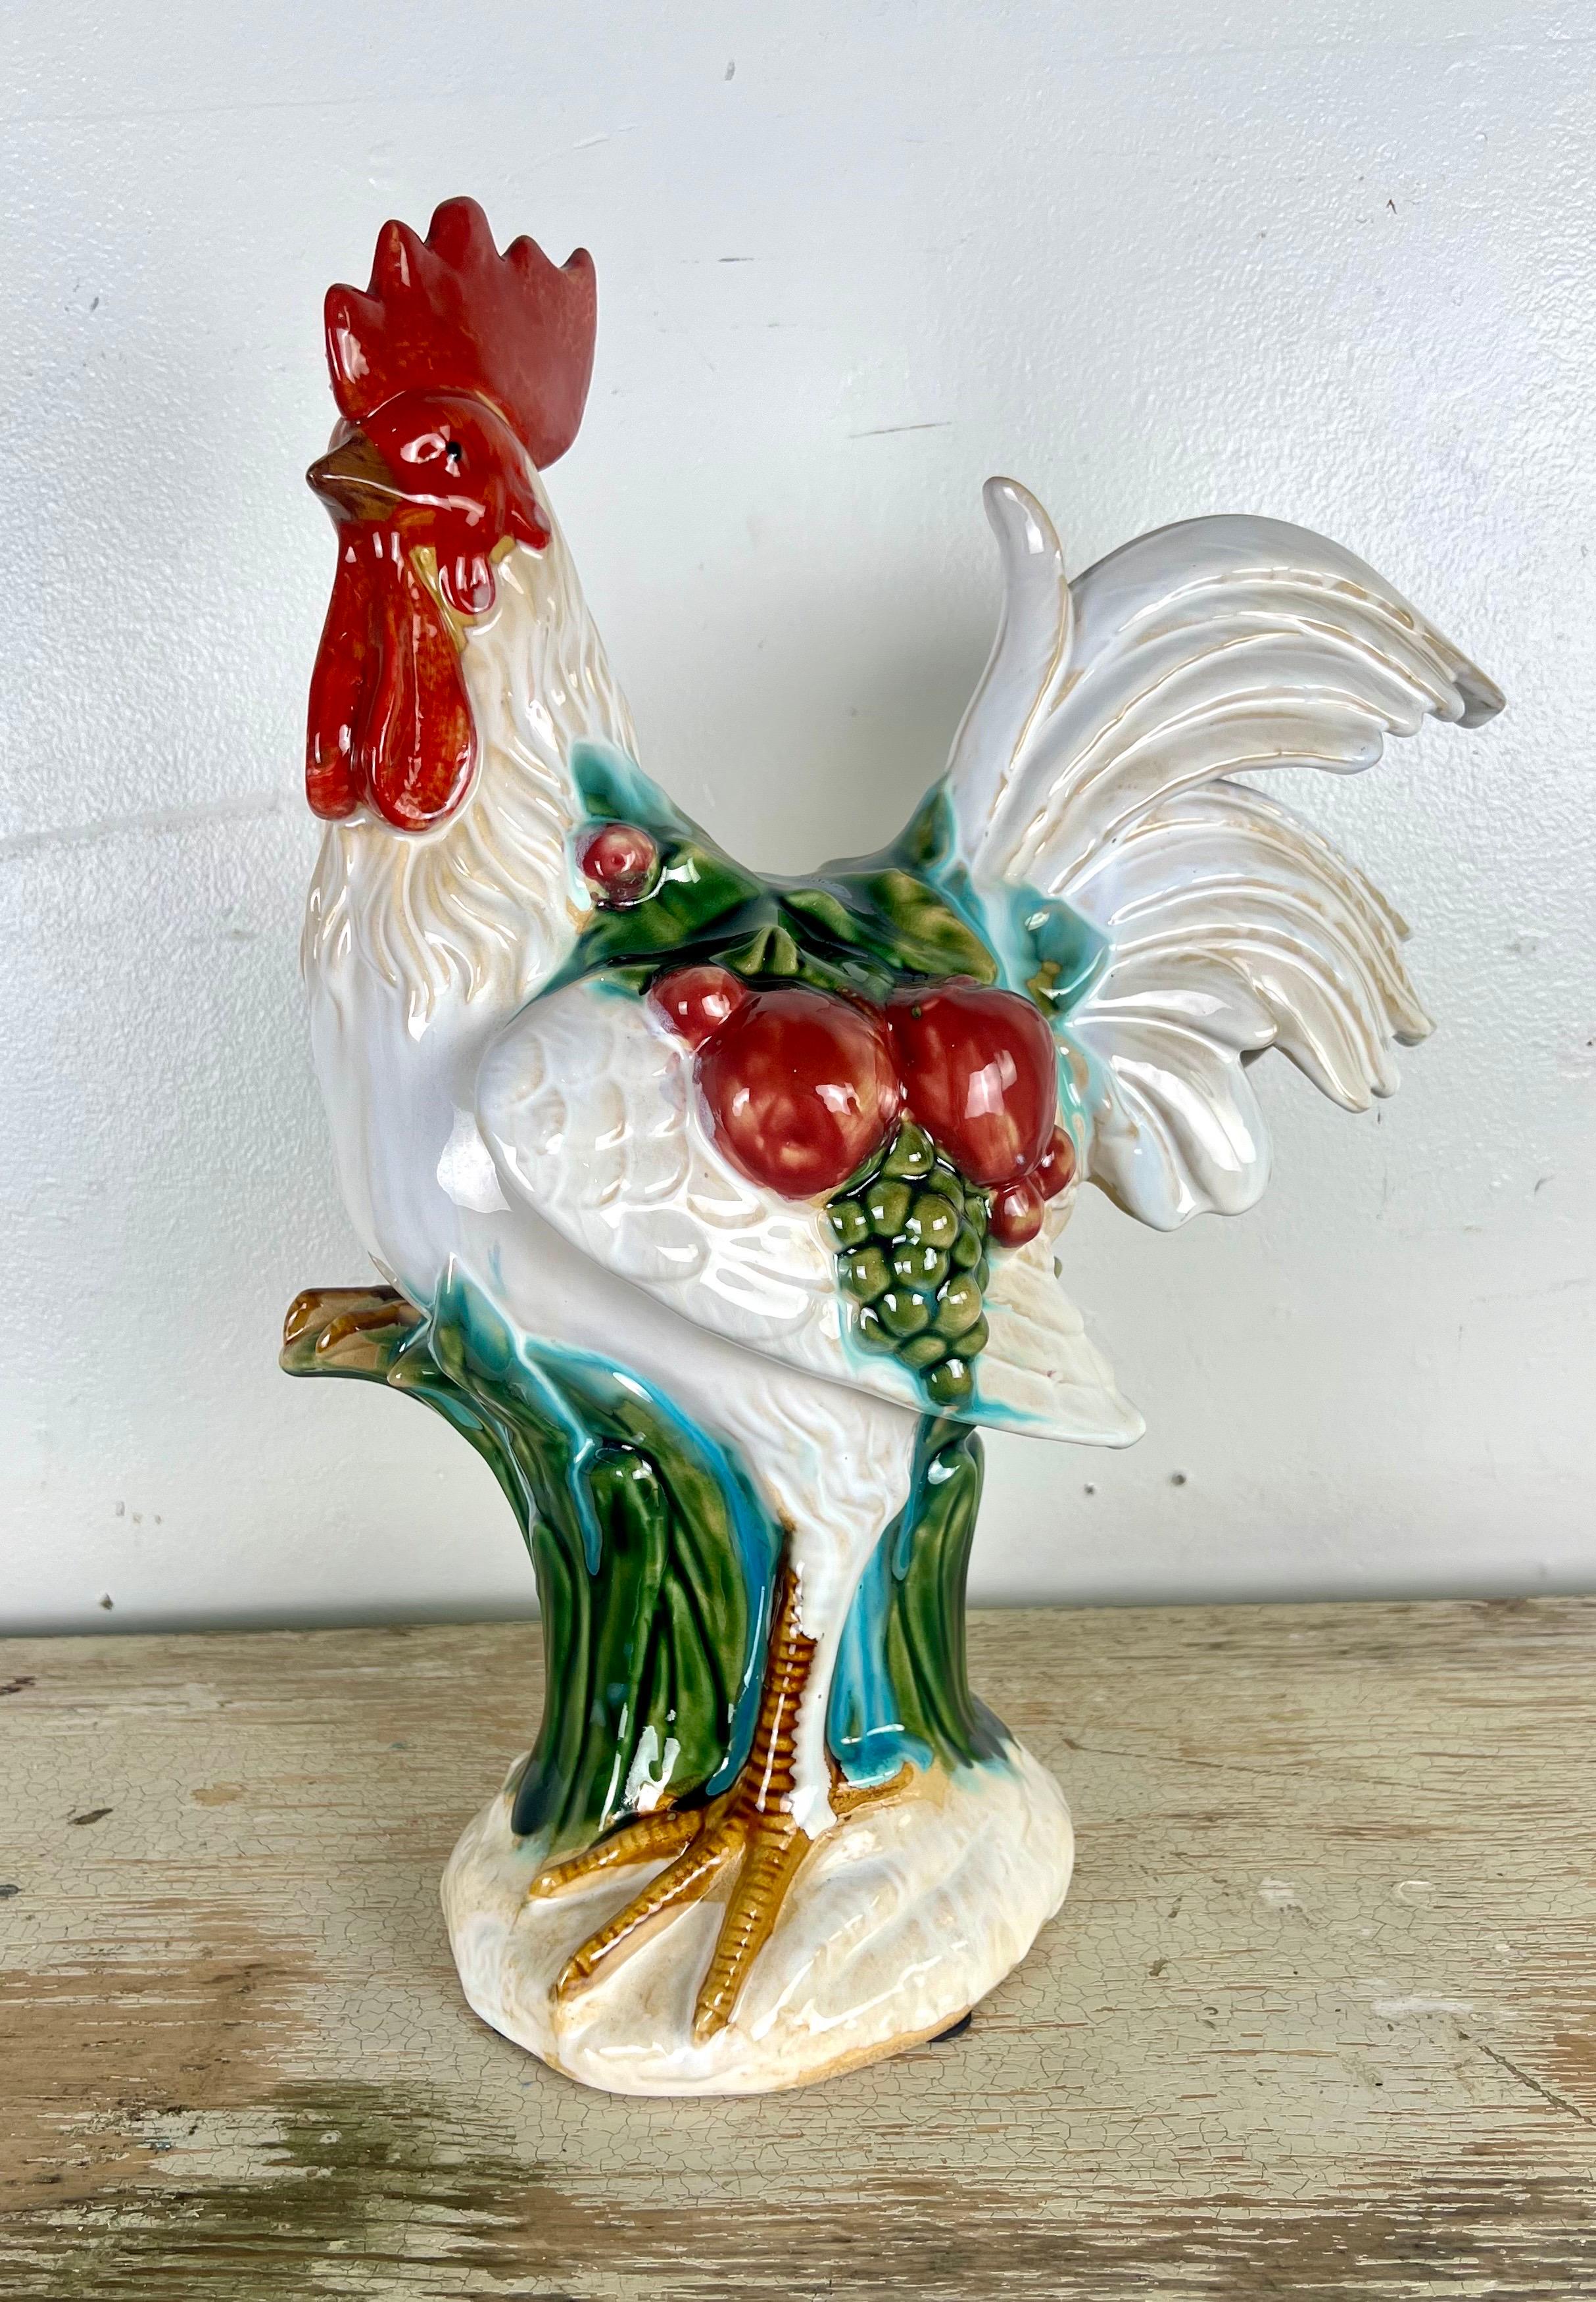 Une poule en céramique émaillée française qui porte le charme d'une cuisine rustique de campagne.  Cette figurine est méticuleusement ornée d'un éventail de fruits éclatants ; des pommes mûres et des raisins luxuriants sont représentés dans une